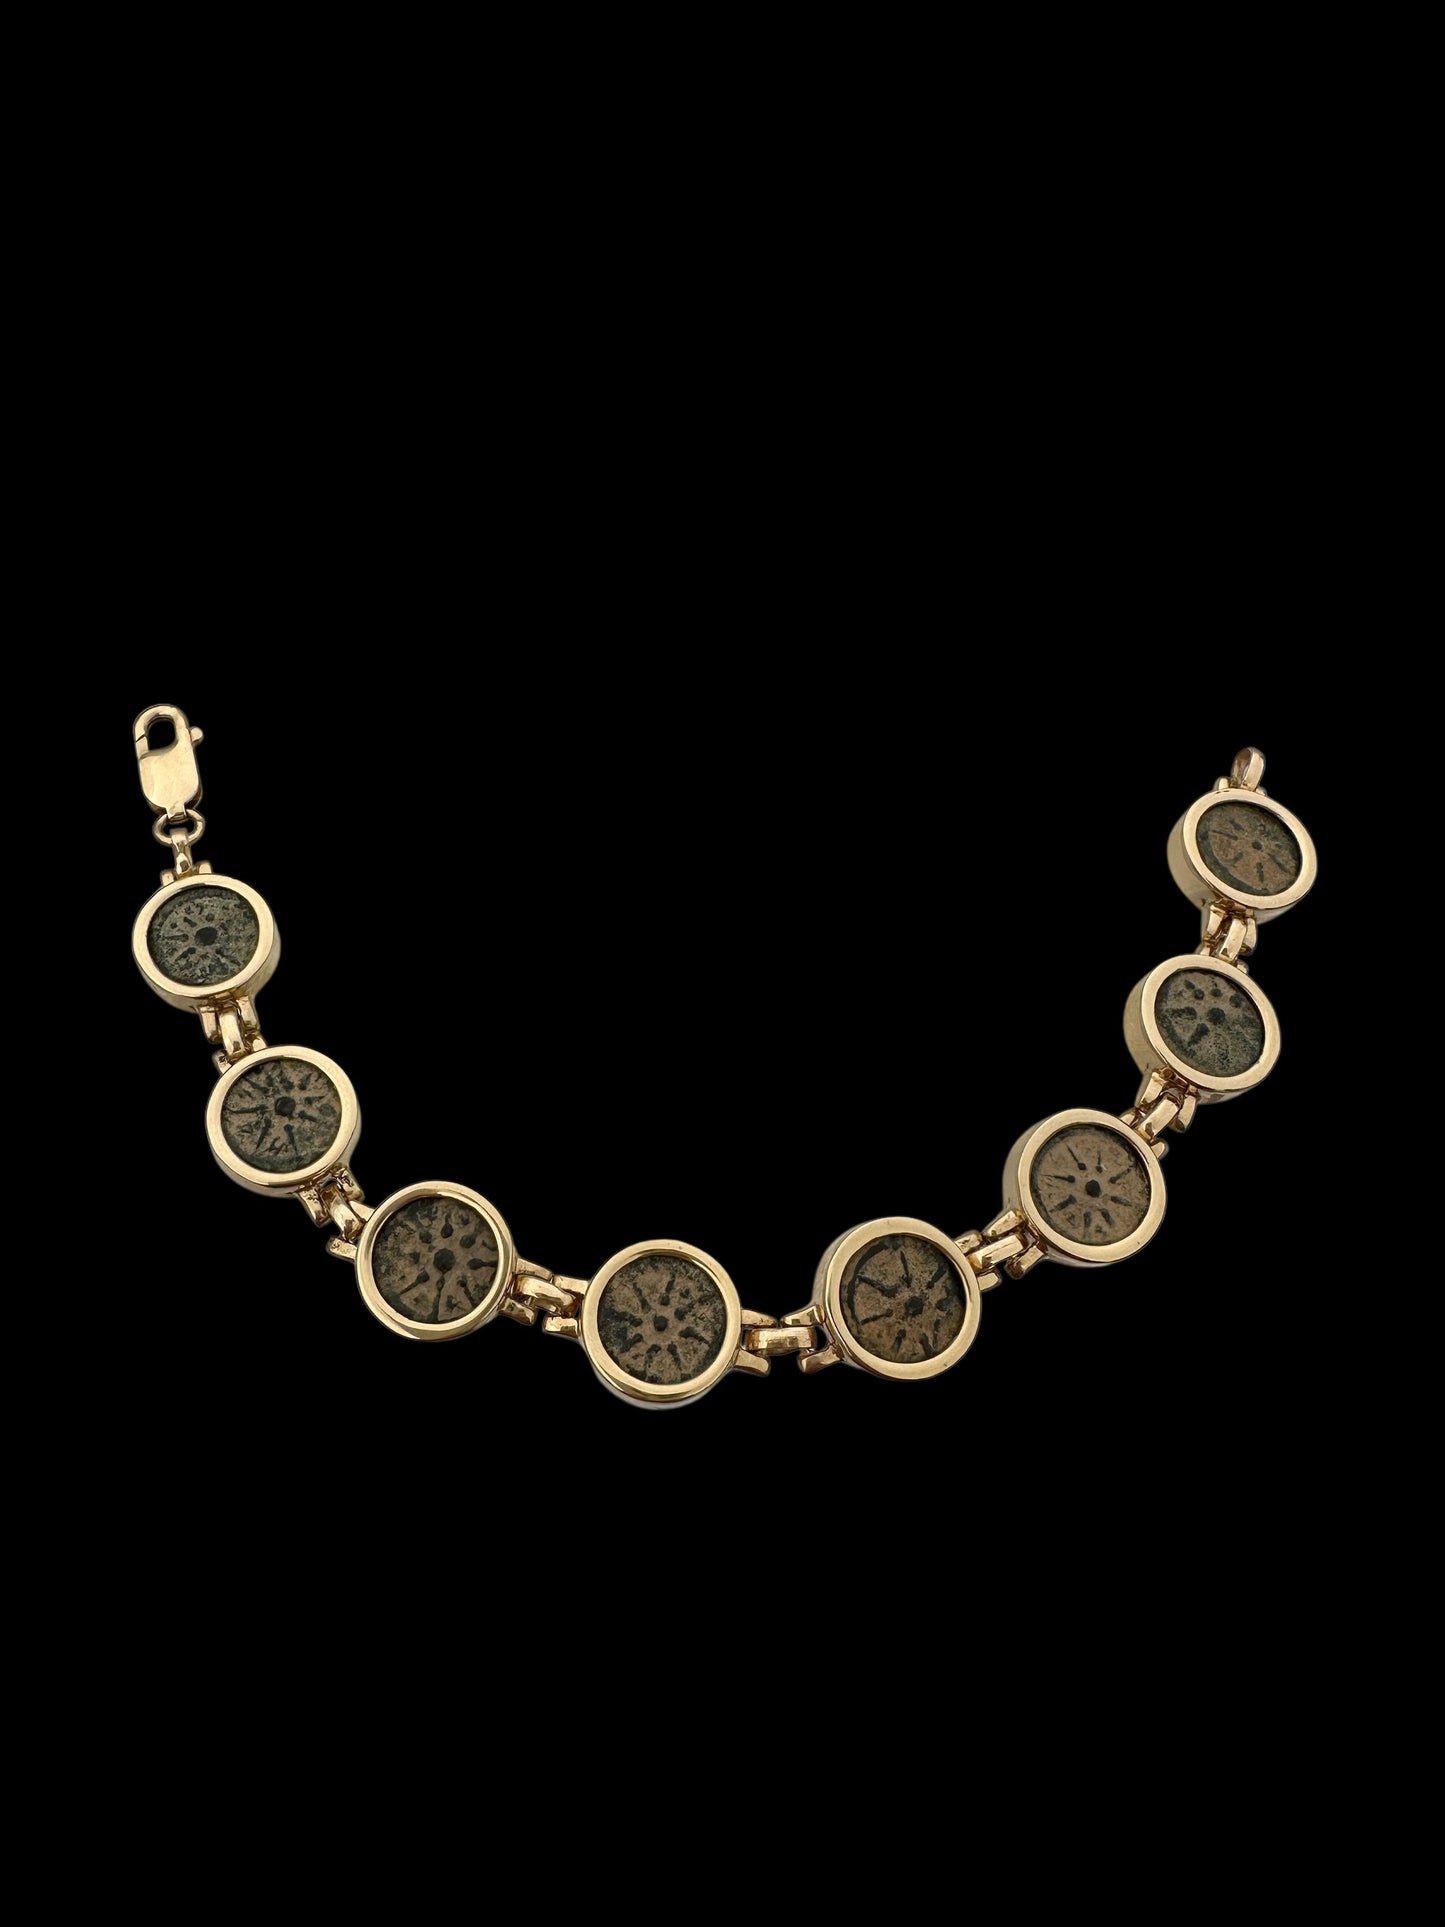 Ancient Widow’s Mite Jewish Maccabean Coin Set in Heavy 14k Gold Bracelet